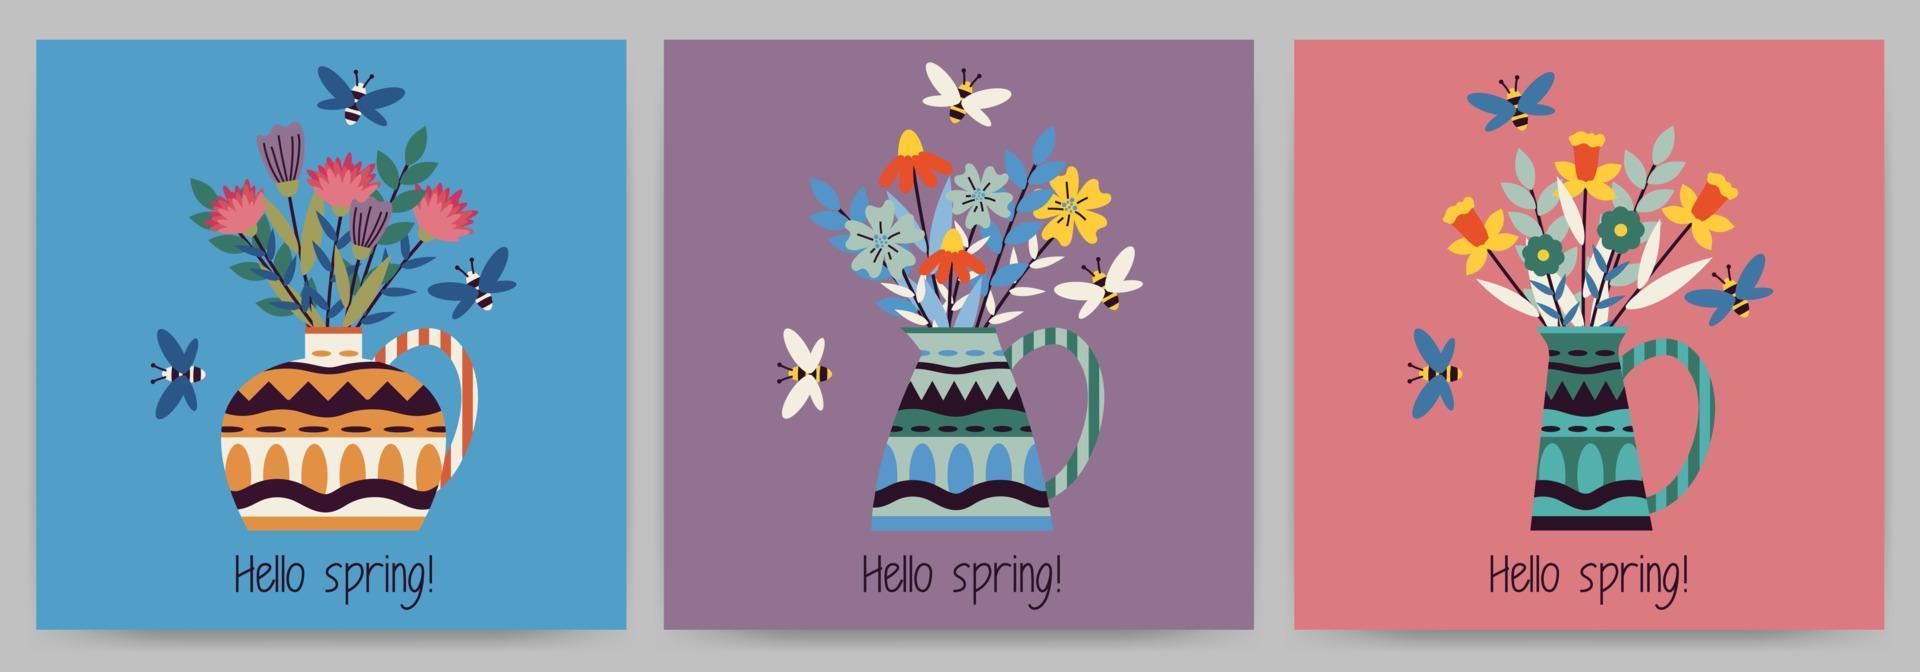 ensemble de cartes postales, invitations, bonjour printemps. modèles carrés avec des fleurs dans un vase, des abeilles et du texte. illustration vectorielle sur un fond coloré. vecteur